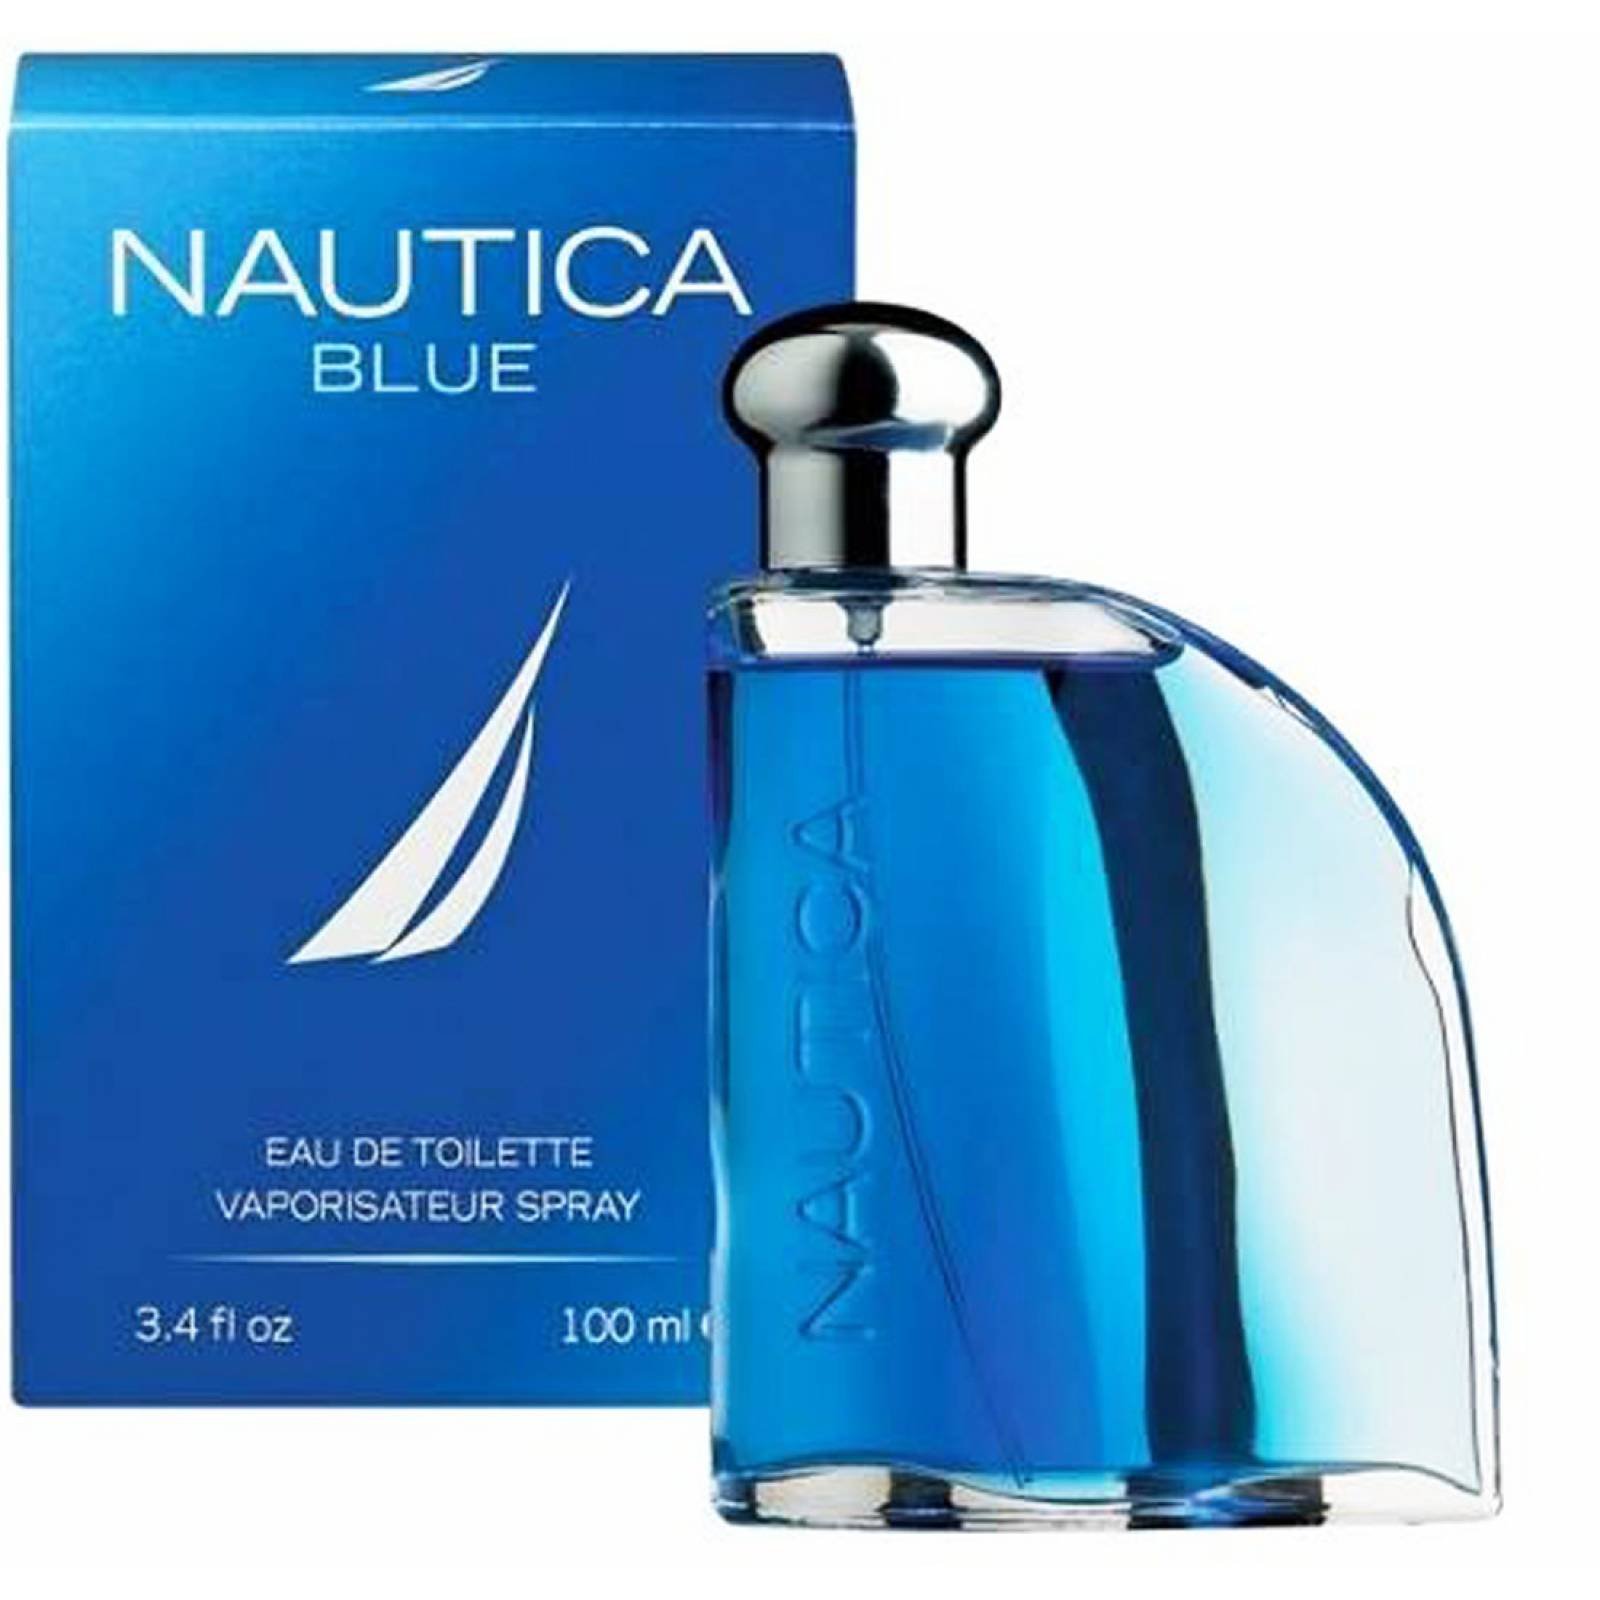 nautica voyage classic